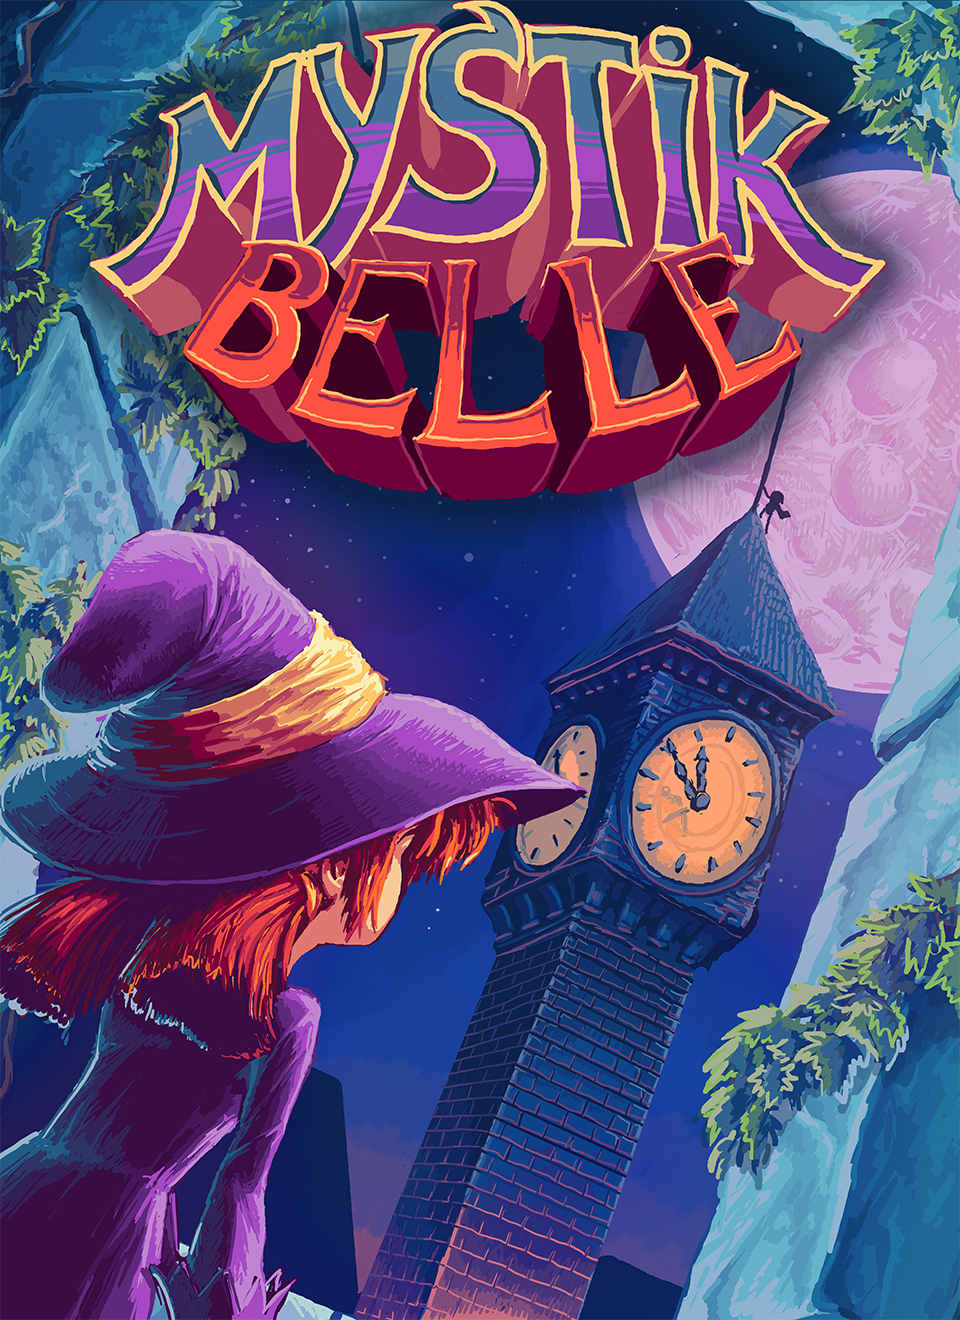 Mystik Belle #4